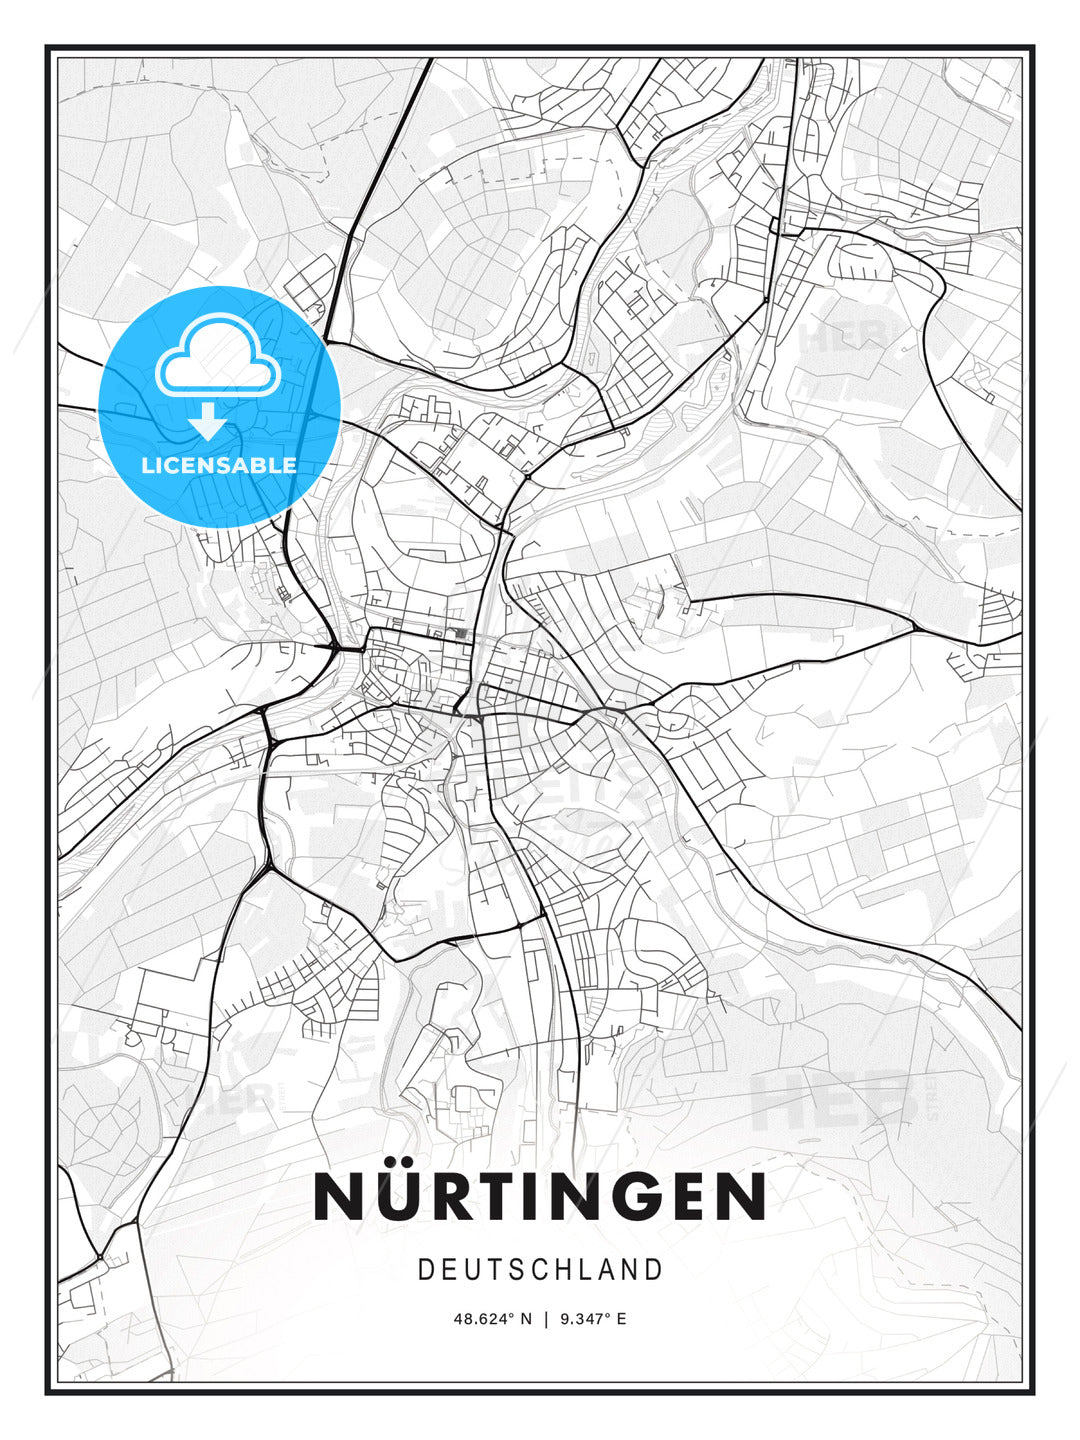 NÜRTINGEN / Nurtingen, Germany, Modern Print Template in Various Formats - HEBSTREITS Sketches